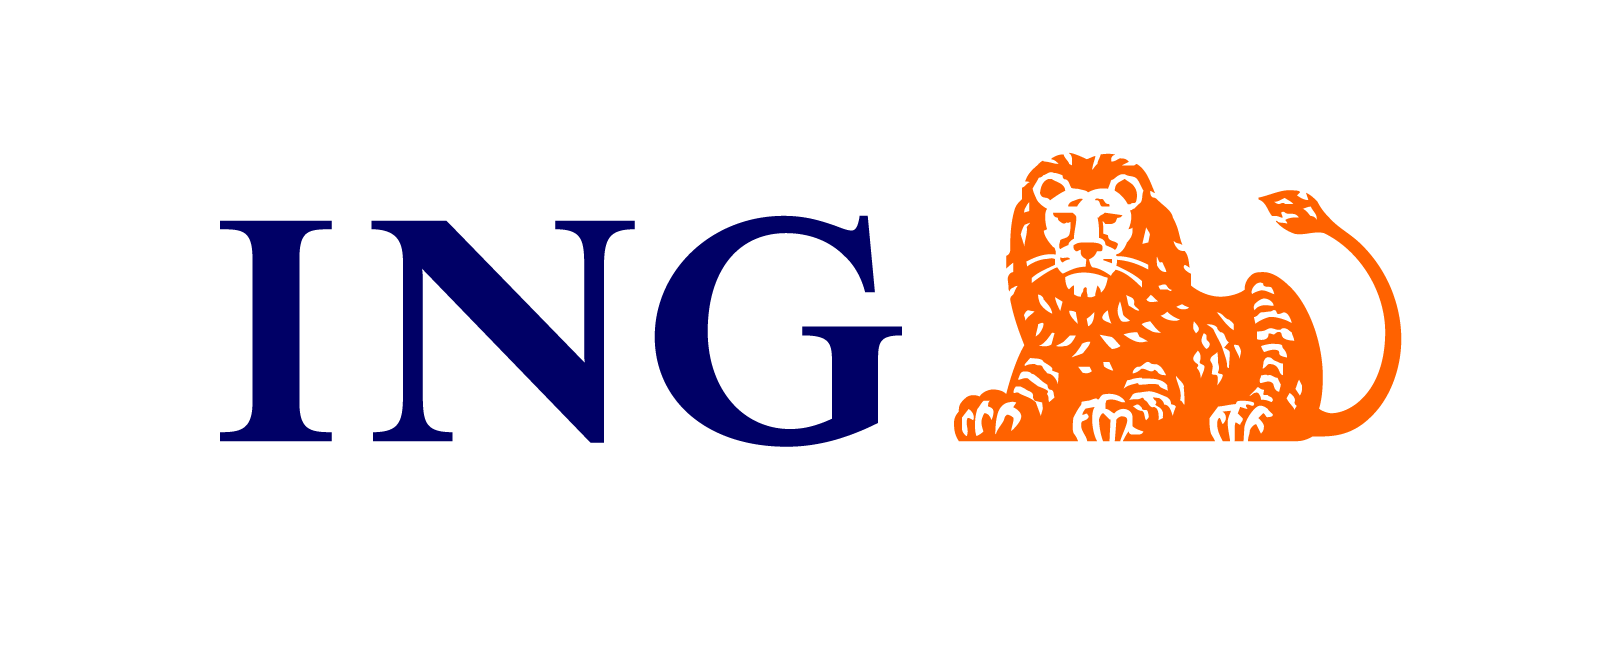 ING_Primary_Logo_RGB